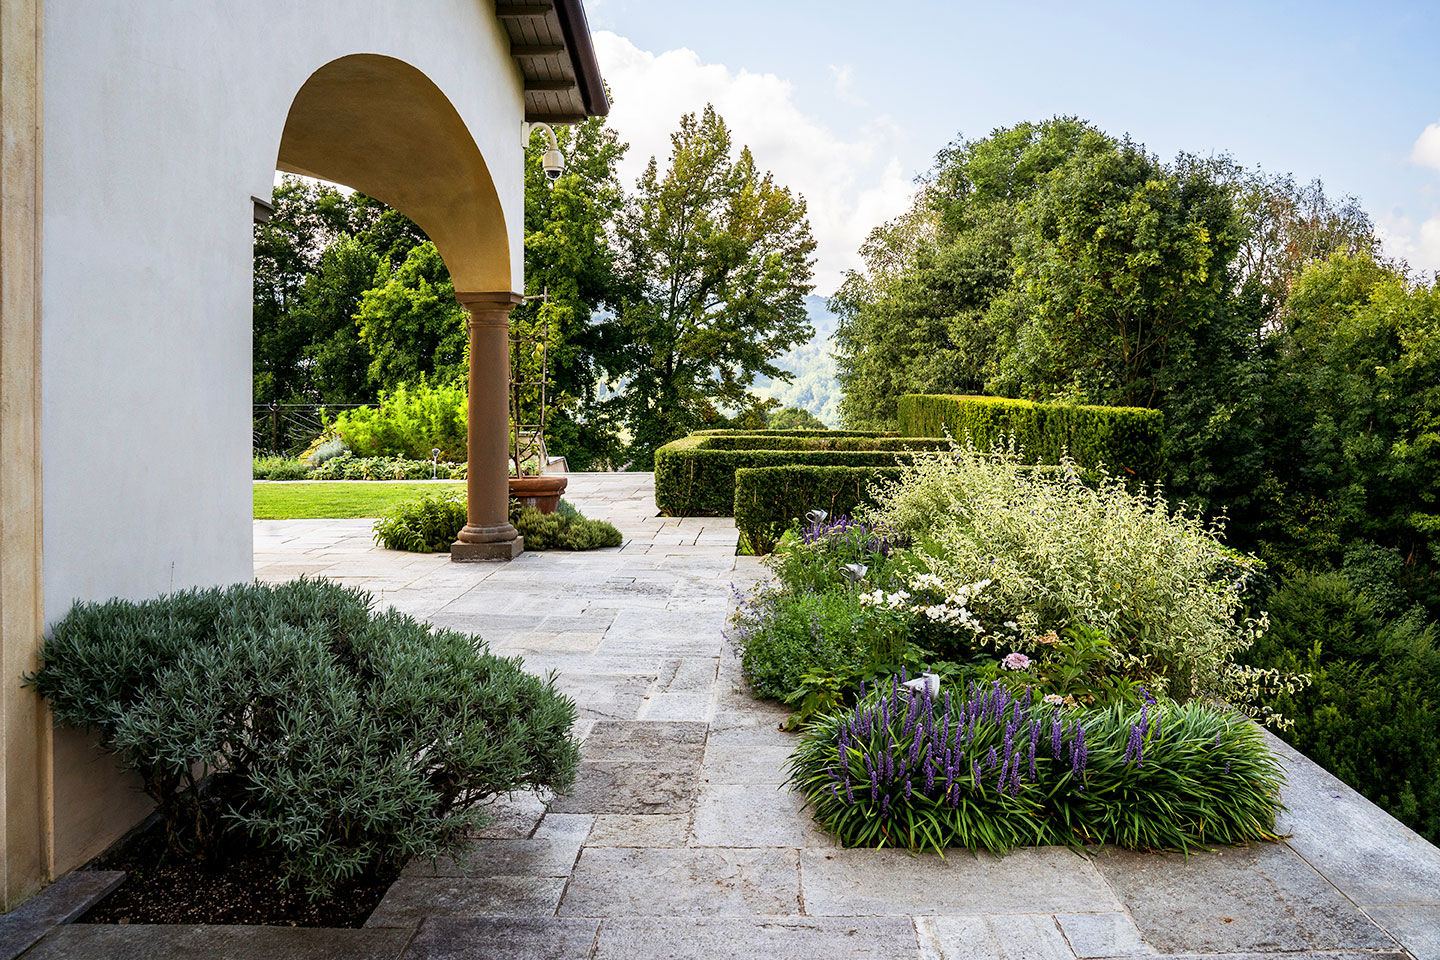 Fvp - Florovivaistica Picinali progettazione giardini bergamo